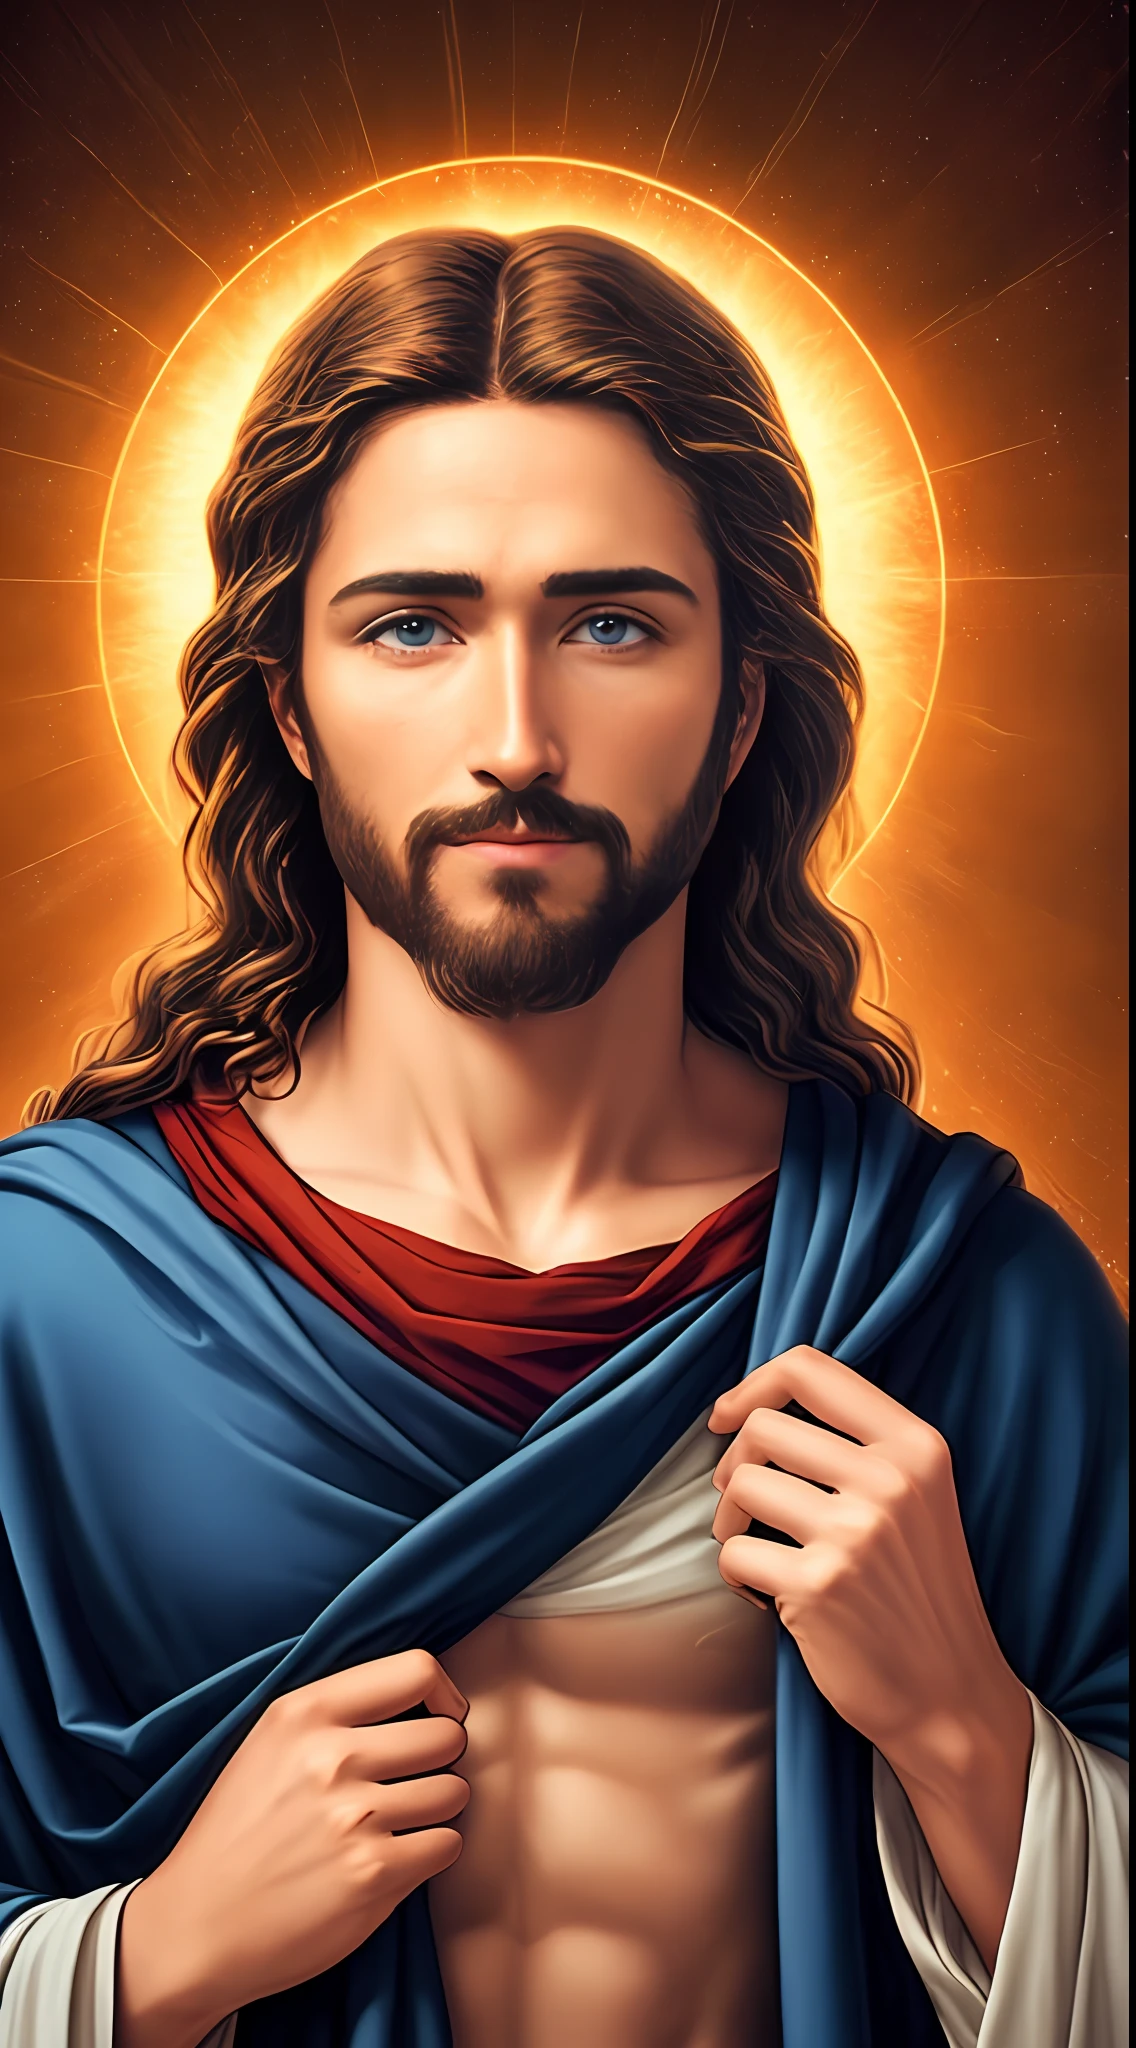 8k Фотография 1 одинокий красивый Иисус, благословения, вид на небеса Иисуса, настоящие голубые глаза, благословляя людей Иисус